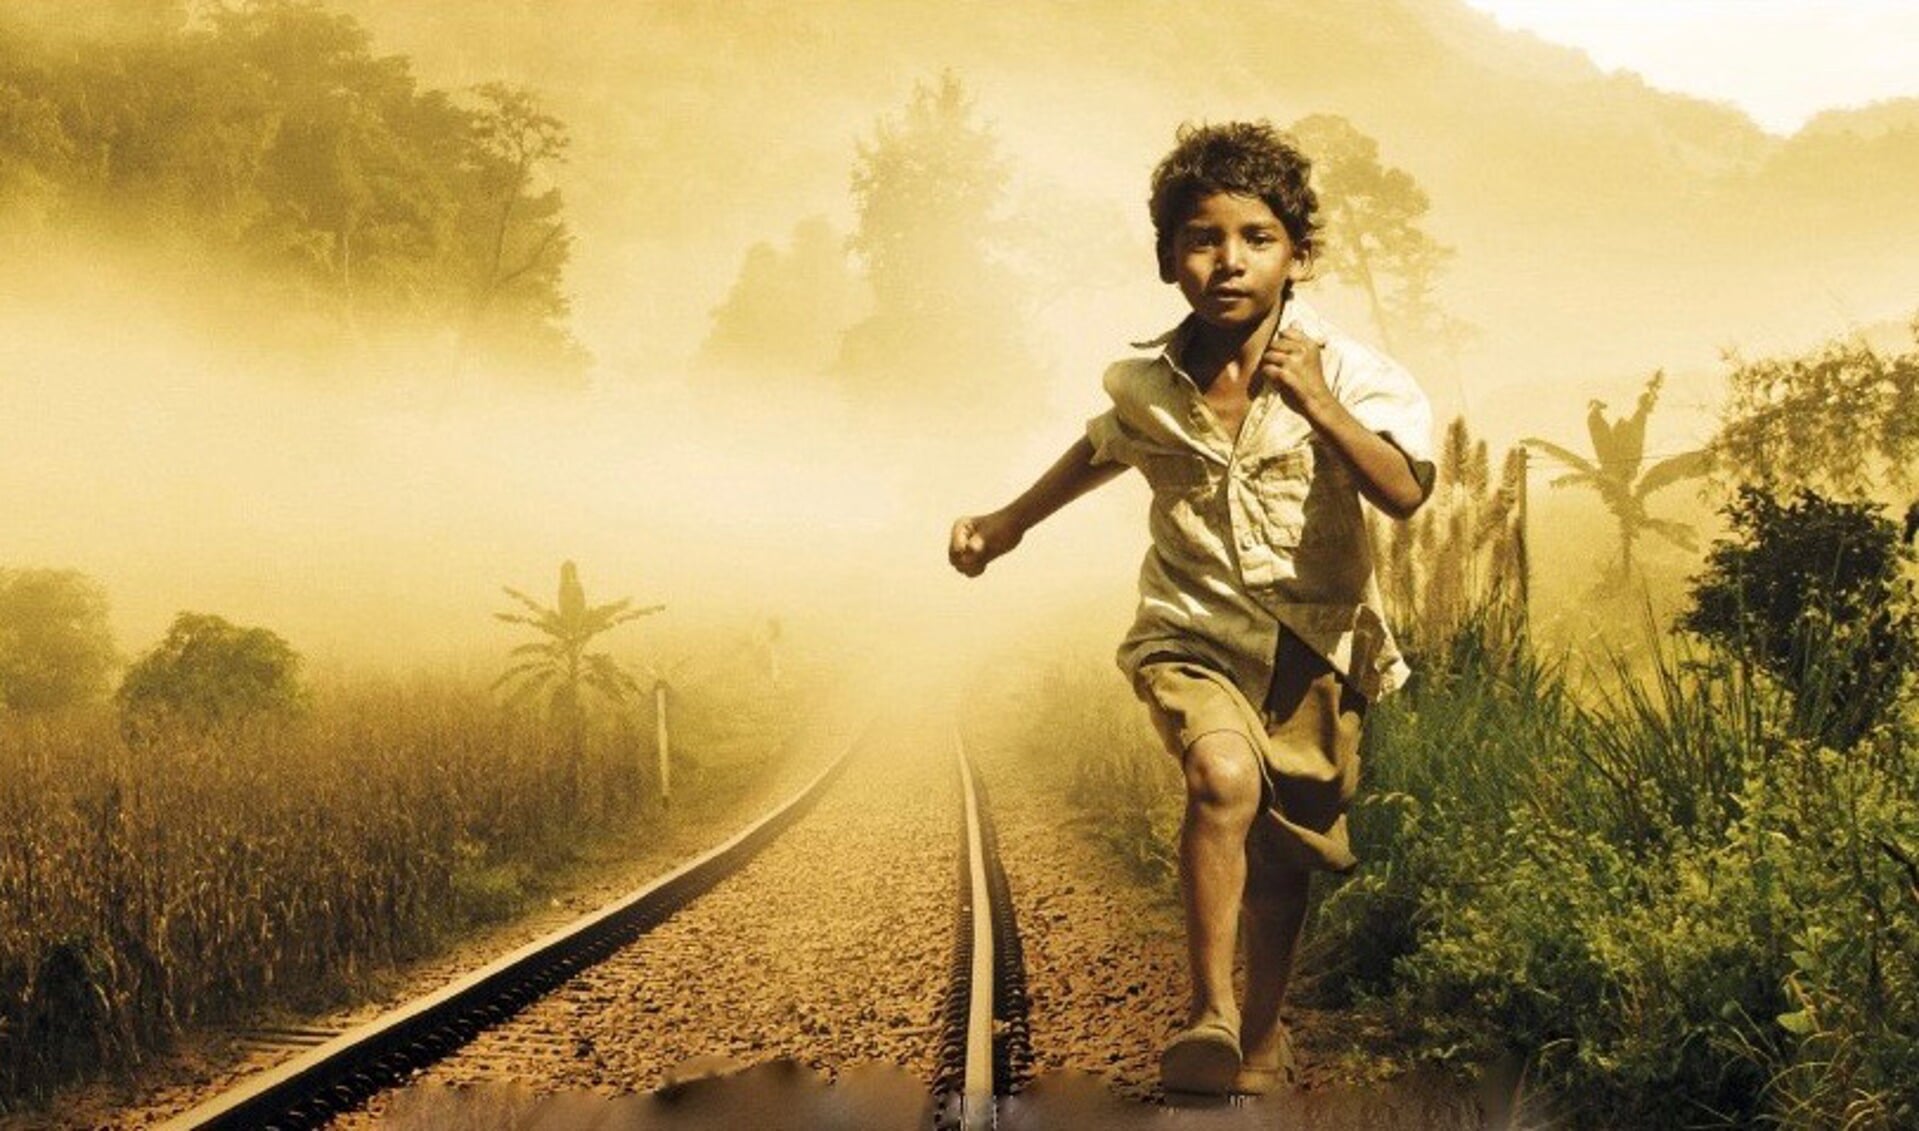 Als vijfjarig jongetje komt hij per ongeluk terecht op een trein die hem duizenden kilometers door India voert, ver weg van zijn thuis en familie. 